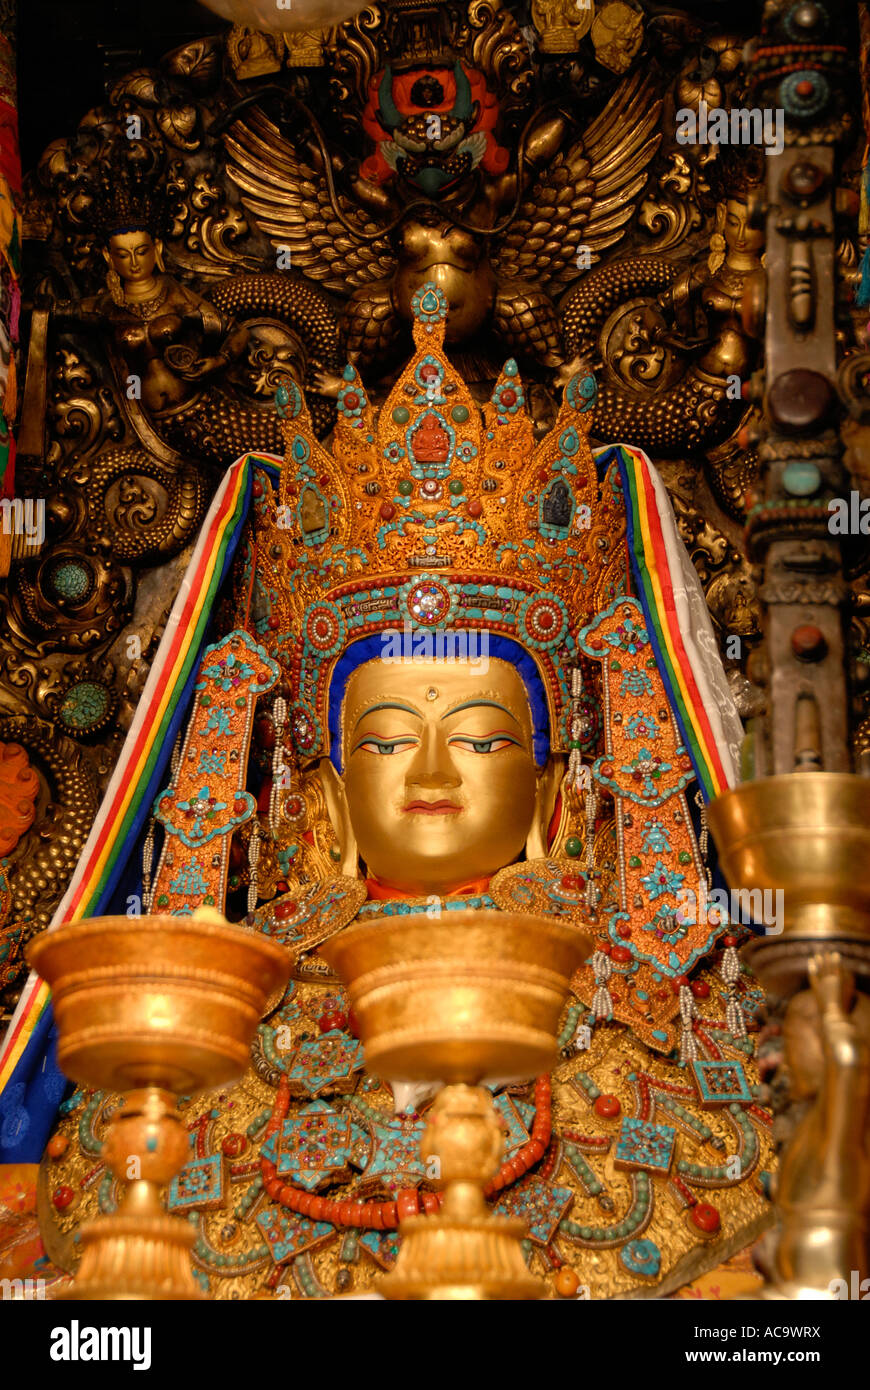 Le bouddhisme tibétain figure sainte Jowo Shakiamuni Lhasa Jokhang Tibet Chine Banque D'Images